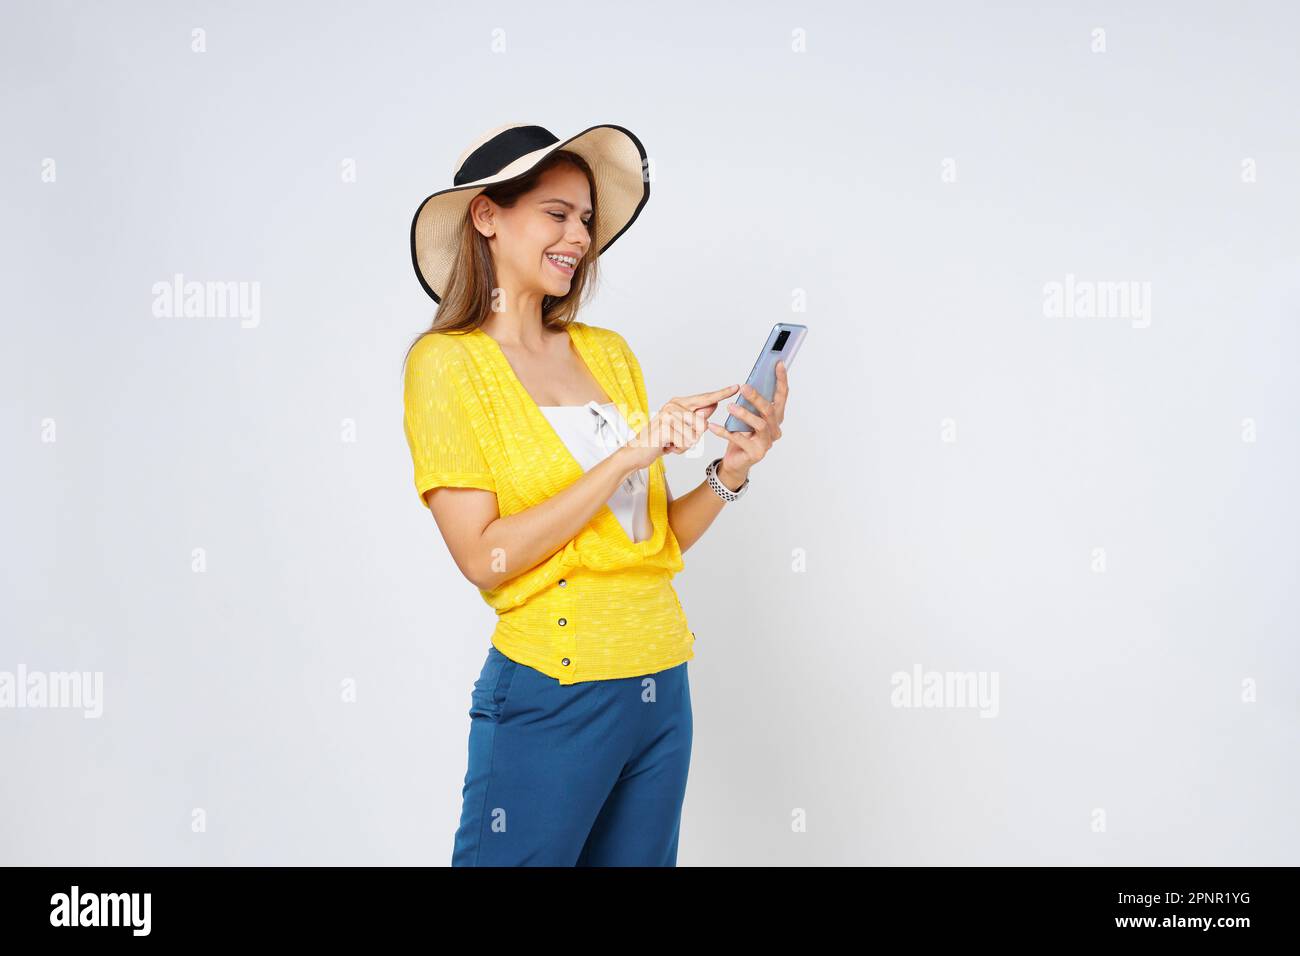 Eine junge Frau, die ein Handy hält und lächelt und einen Sonnenhut und eine Sonnenbrille trägt, isoliert auf weißem Hintergrund. Stockfoto